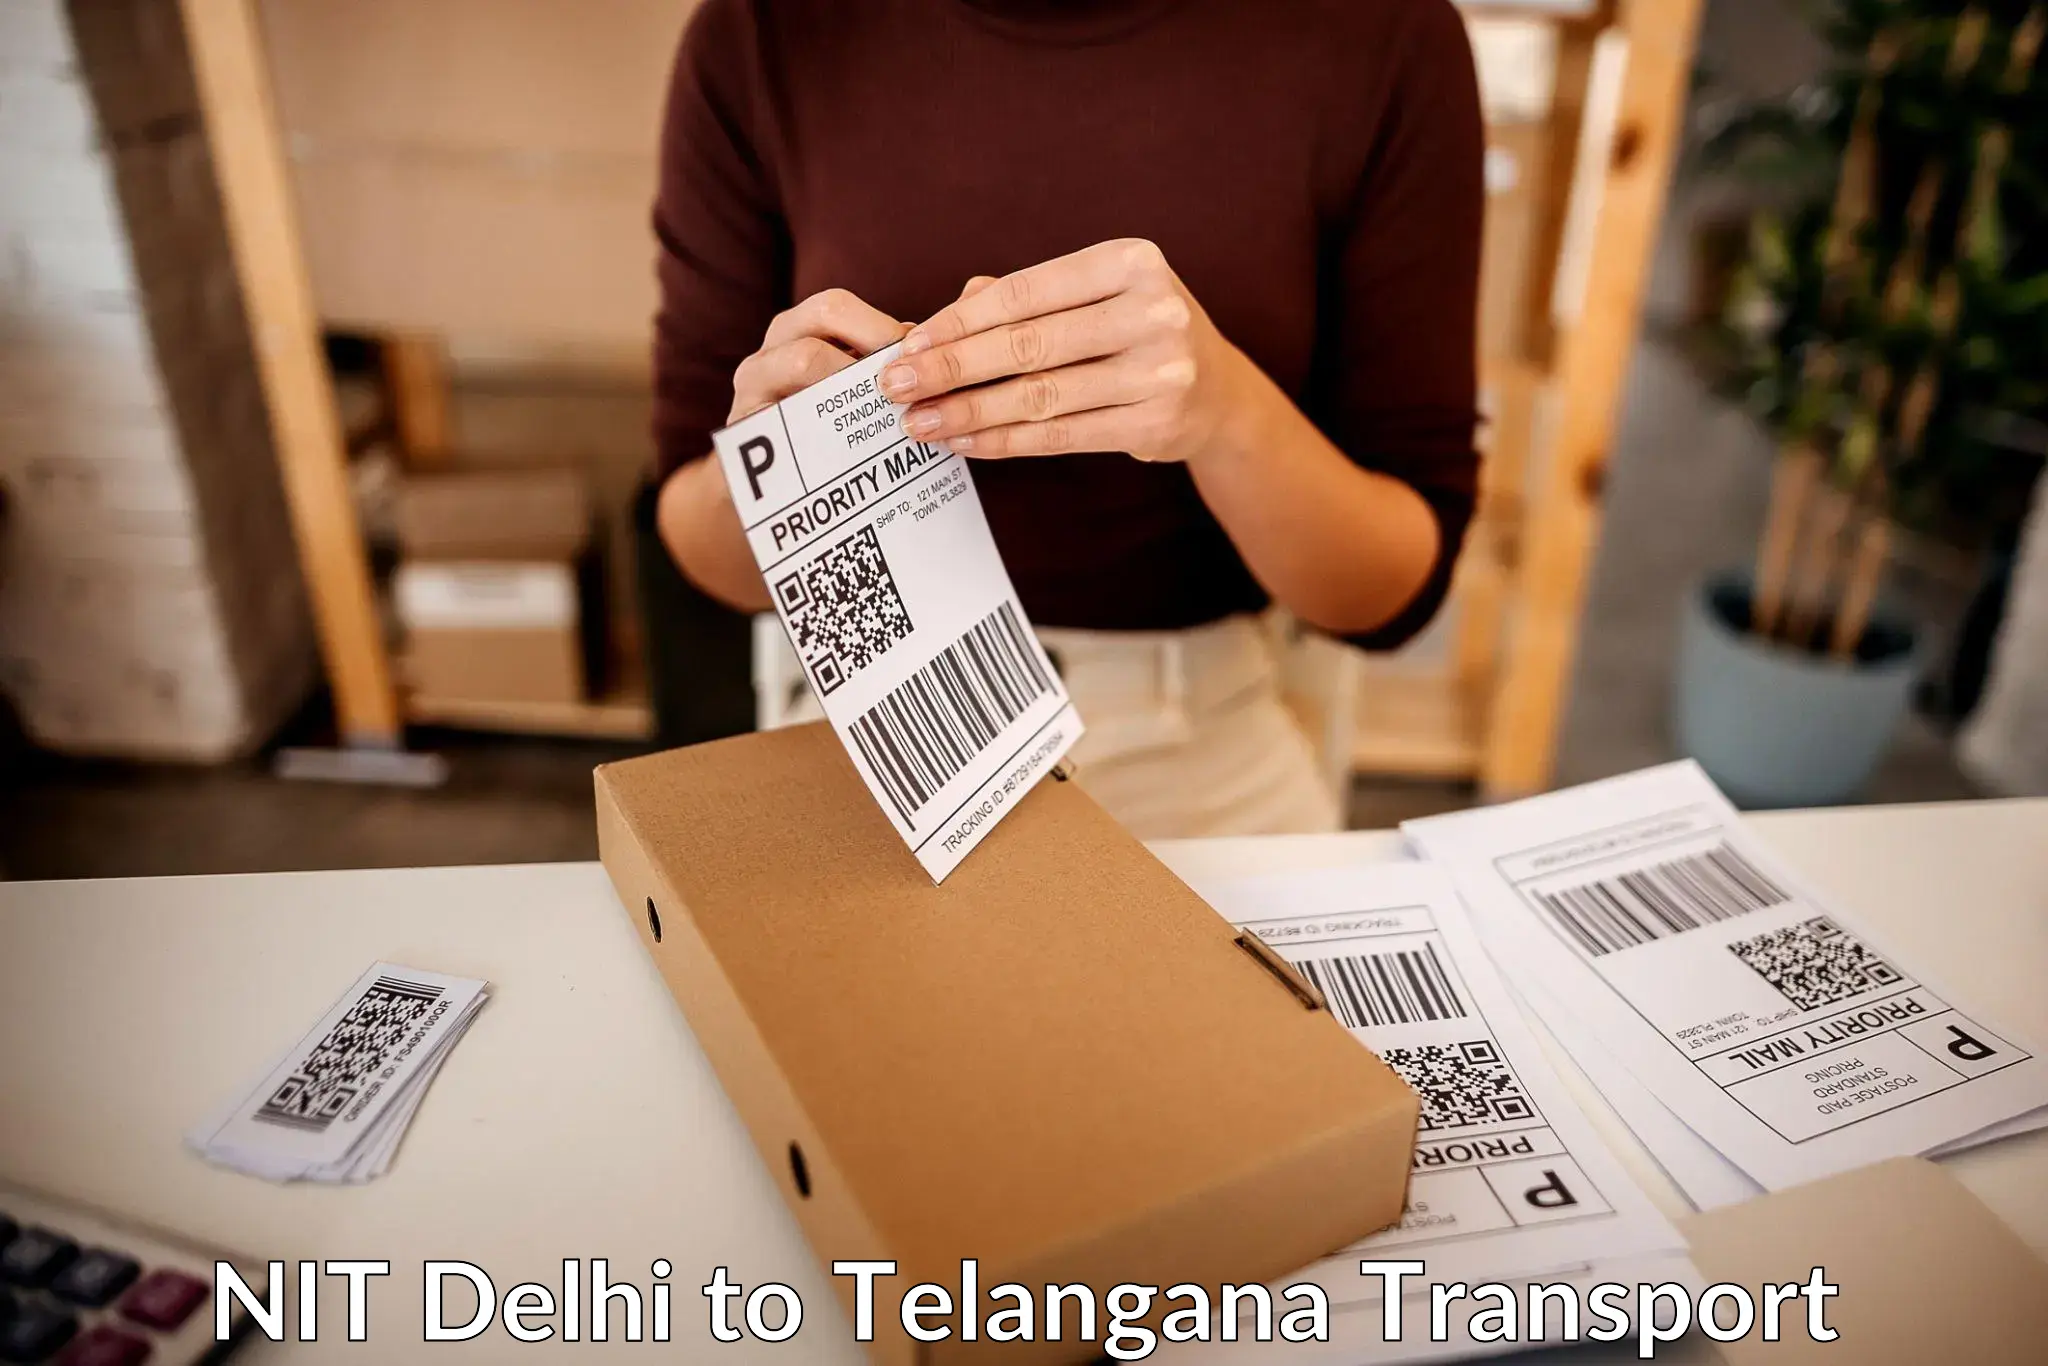 India truck logistics services NIT Delhi to Devarakonda